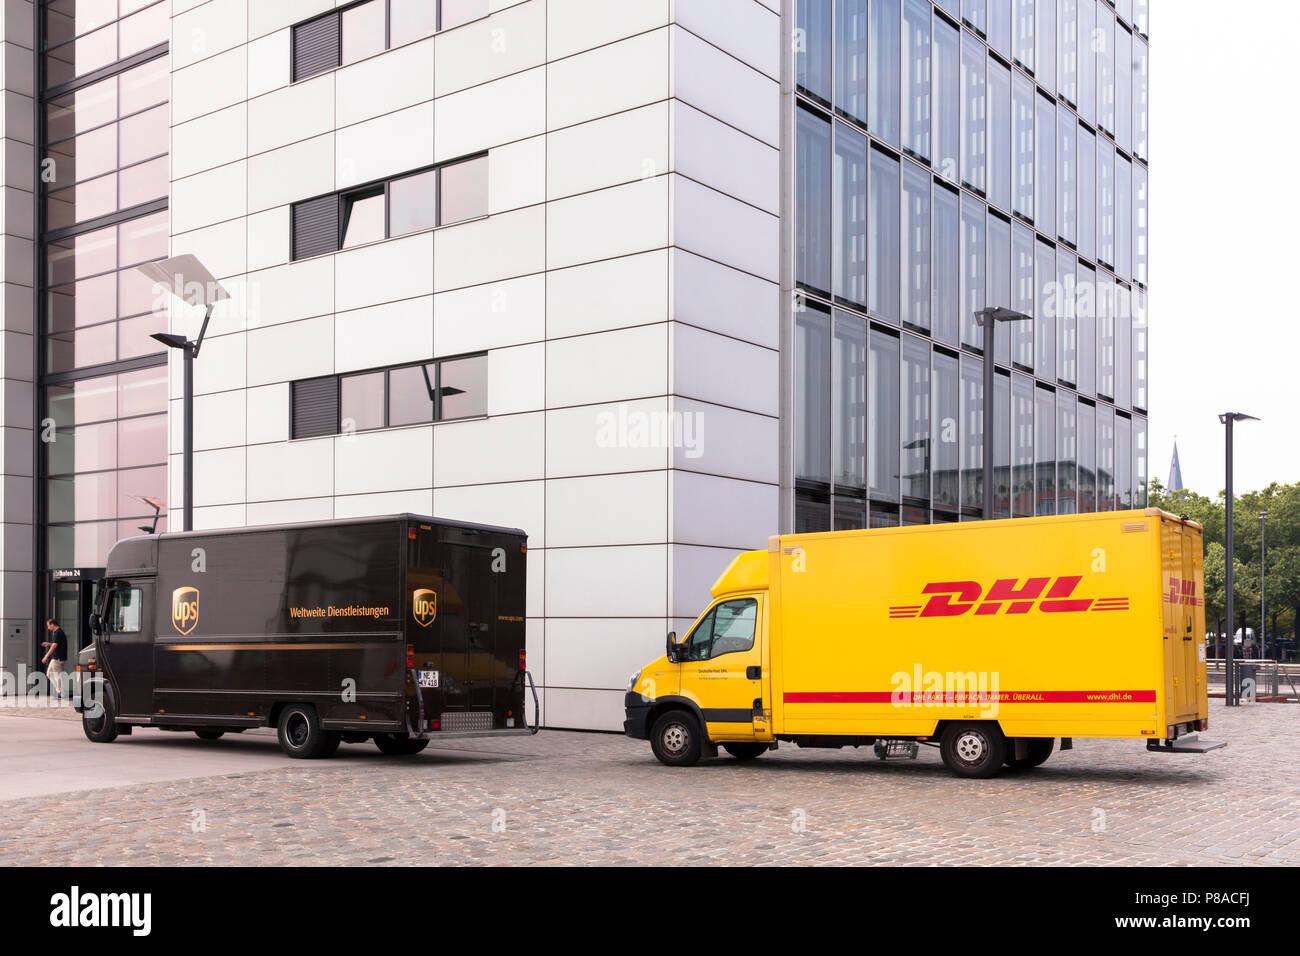 DHL Paketdienst und UPS Paketdienst Autos vor Kranhaus Süd am Rheinauer Hafen, Köln, Deutschland. DHL und UPS Europa vor dem Kranh Stockfoto